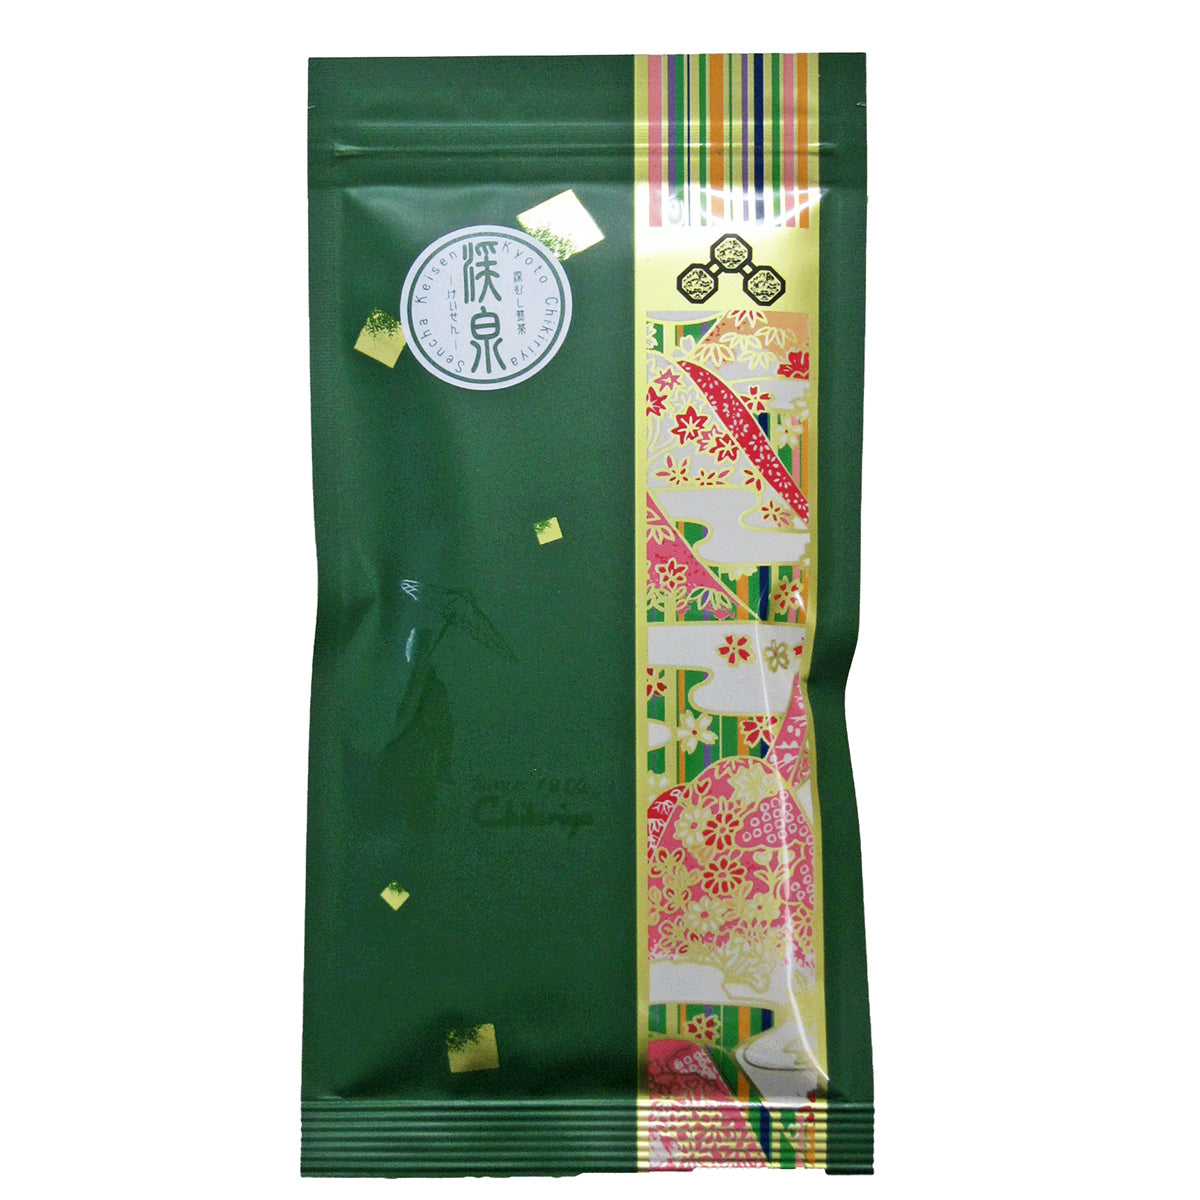 Fukamushi Sencha "Keisen" (Deep-steamed Japanese green tea) - 100g tea leaves